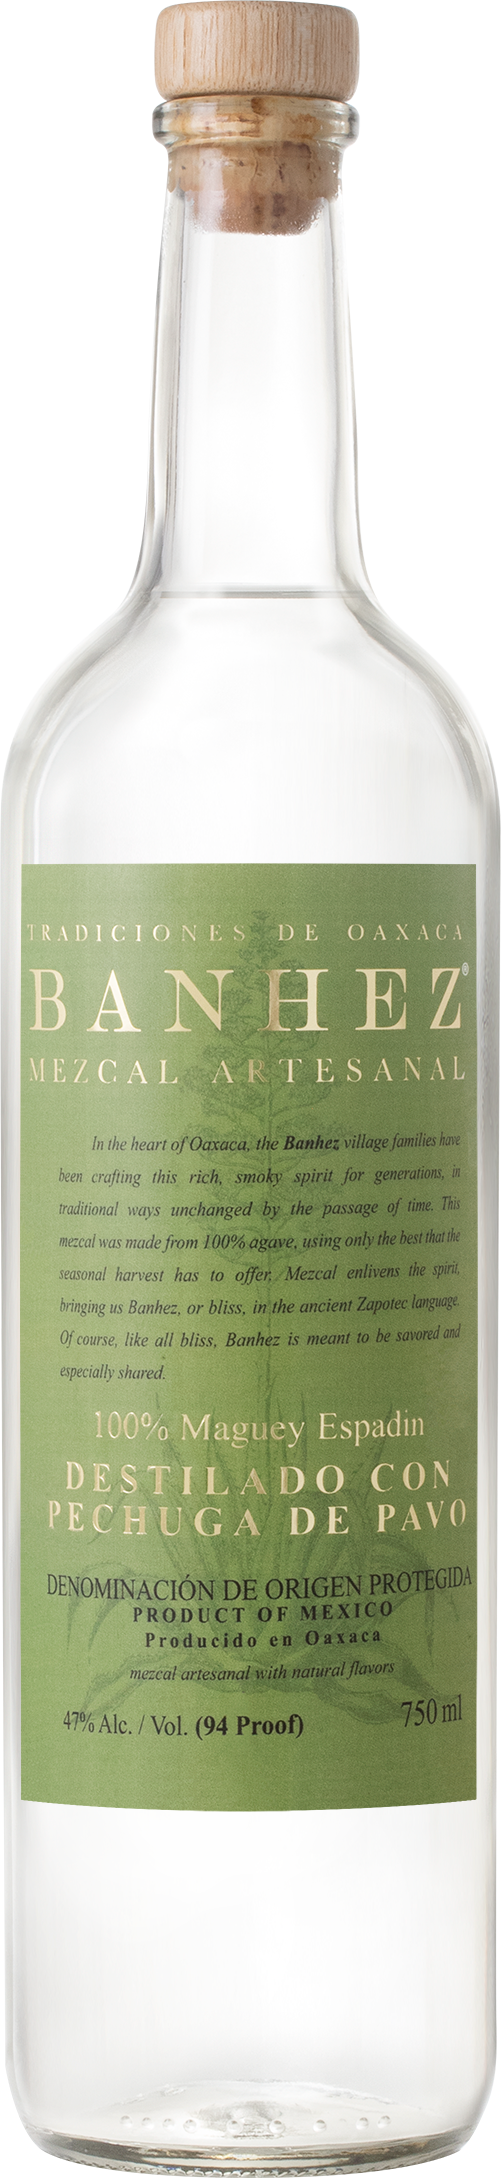 Banhez Destilado con Pechuga de Pavo Mezcal